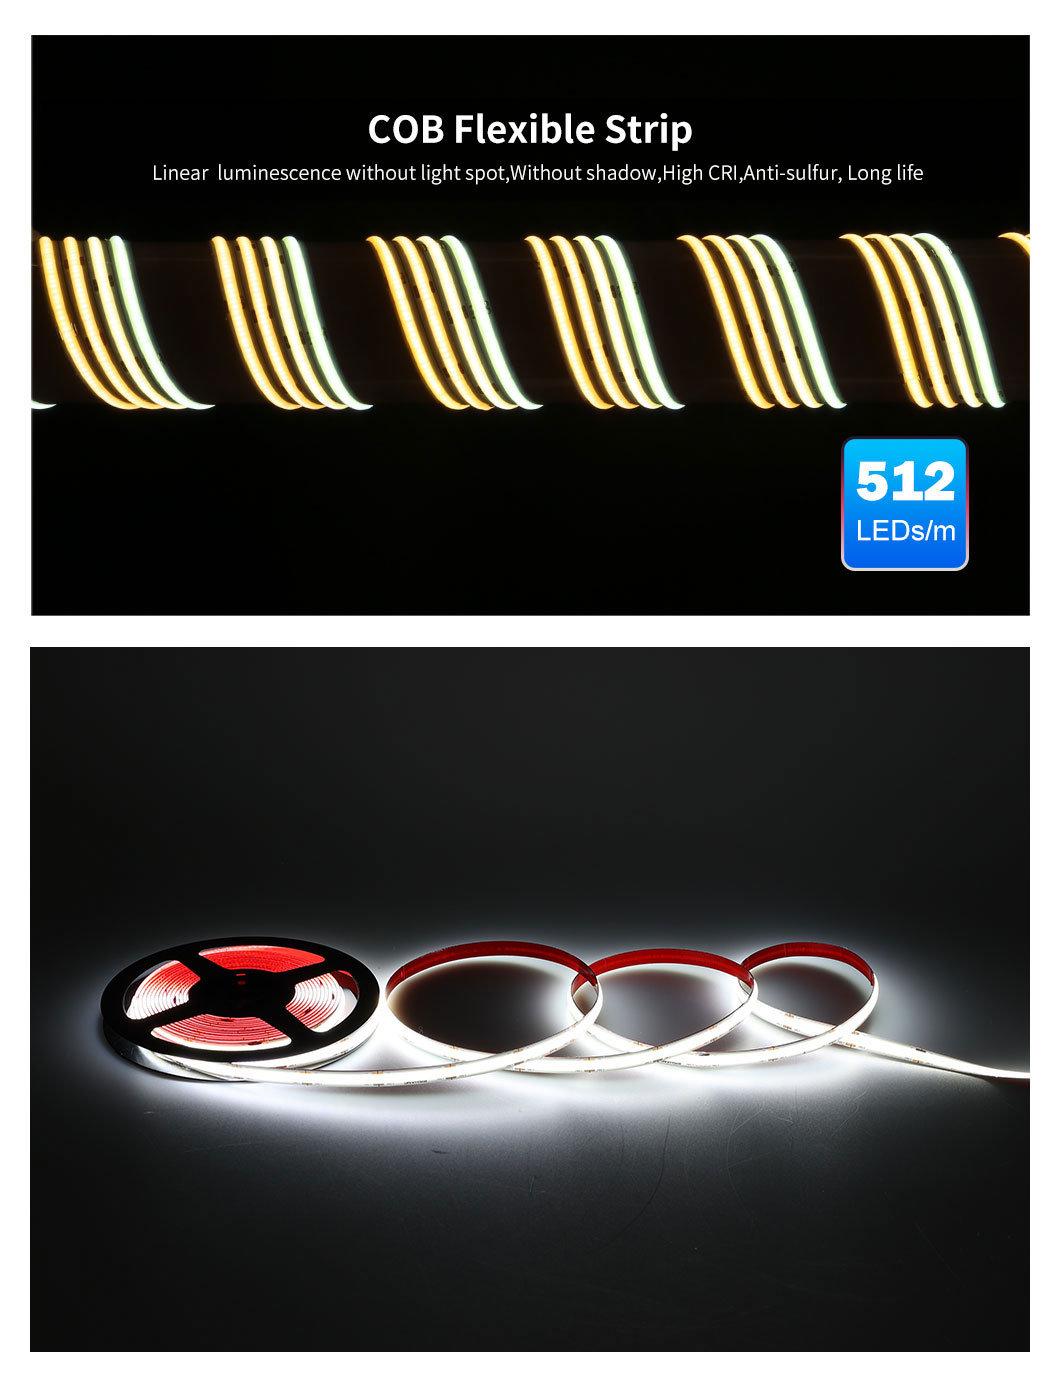 Wholesale for LED TV Backlight OEM/ODM, Flexible COB LED Light Strip, Low Voltage LED Strip, 960-1080lm